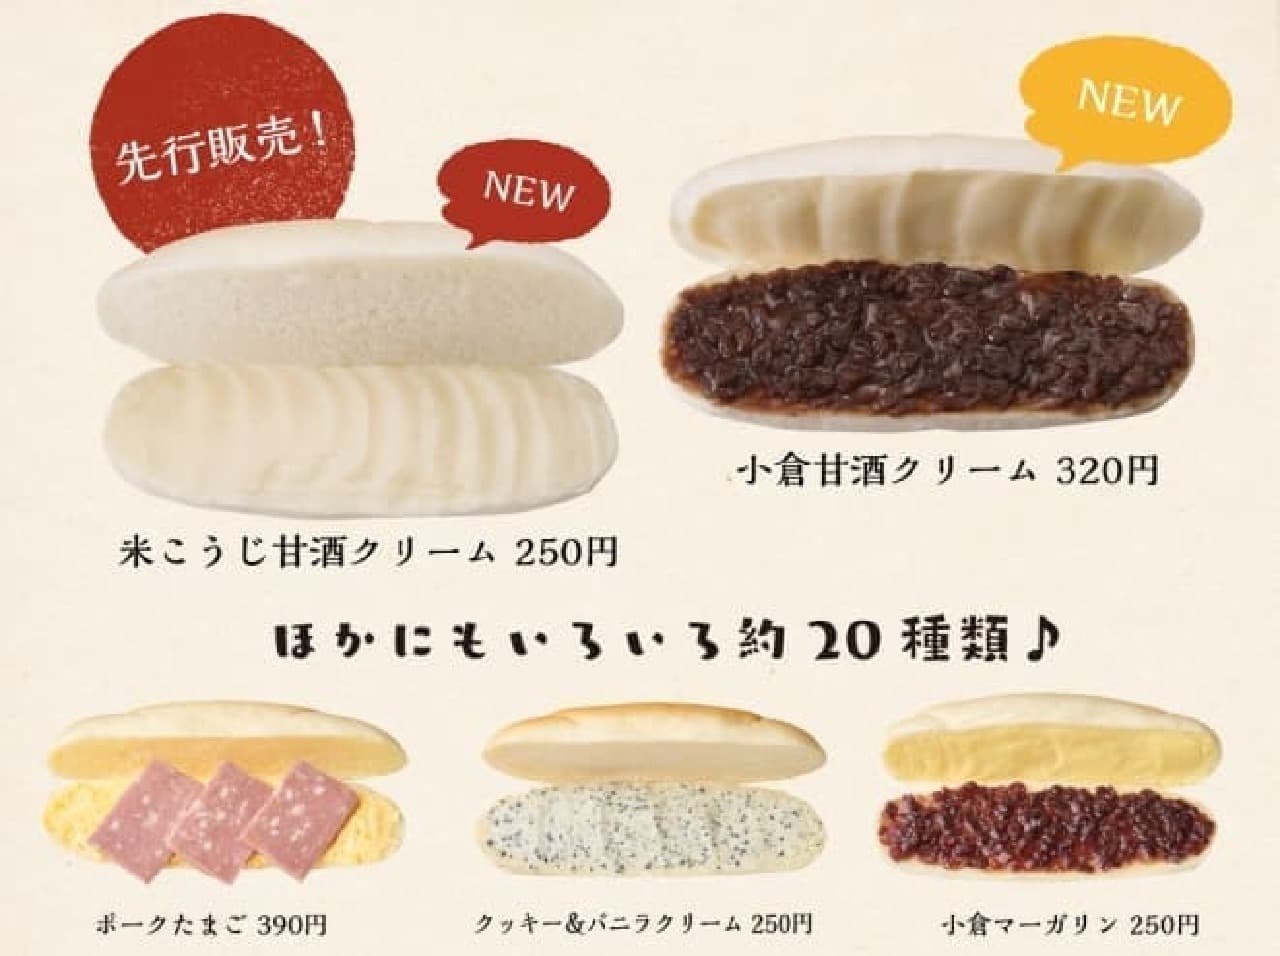 Komeda's Koppe-pan specialty store "Komeda's soft white coppe"